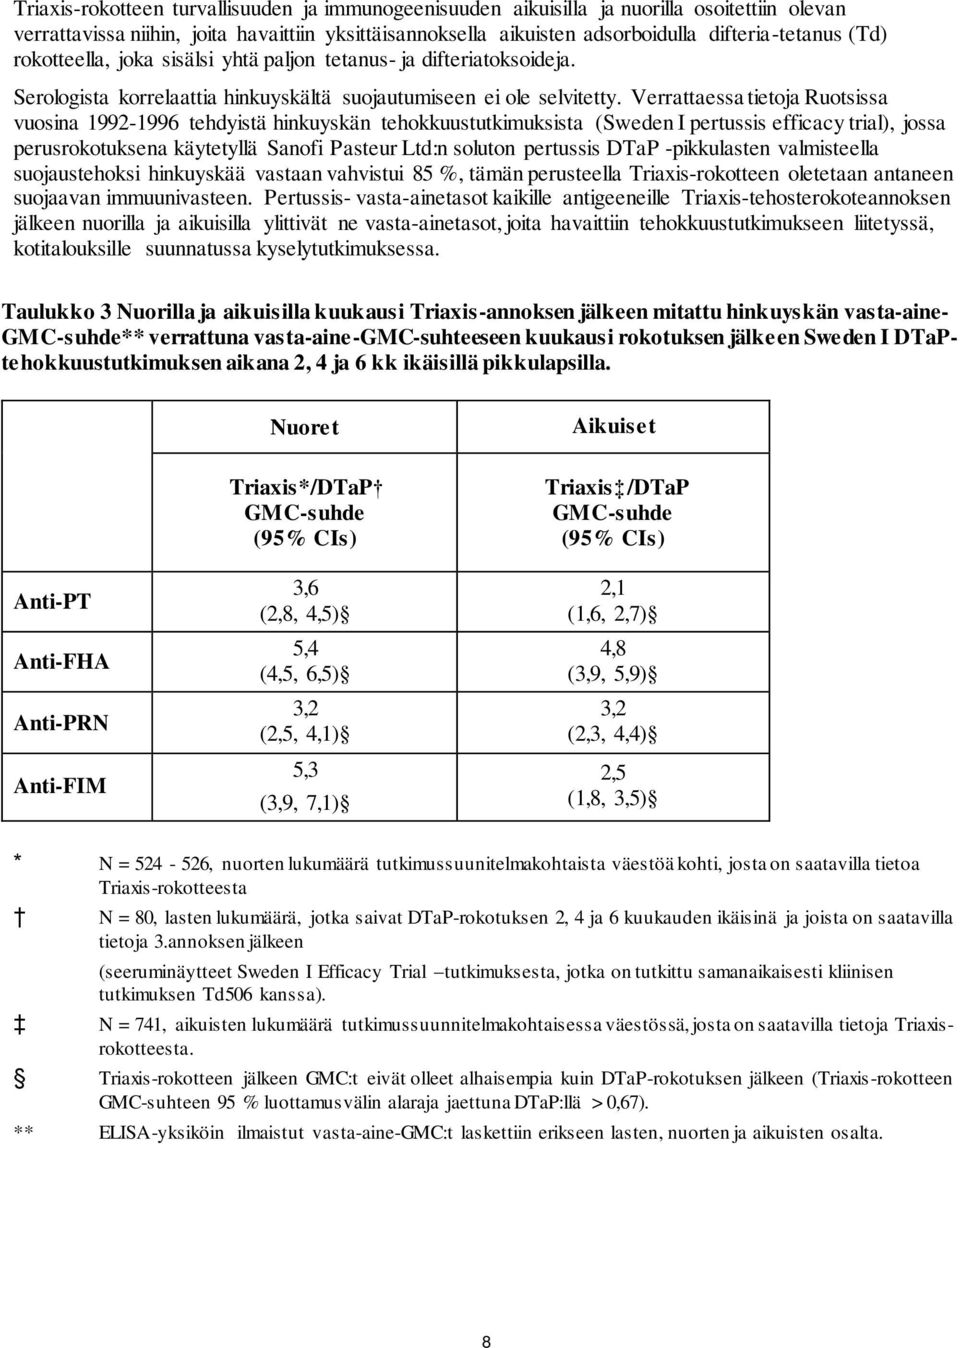 Verrattaessa tietoja Ruotsissa vuosina 1992-1996 tehdyistä hinkuyskän tehokkuustutkimuksista (Sweden I pertussis efficacy trial), jossa perusrokotuksena käytetyllä Sanofi Pasteur Ltd:n soluton